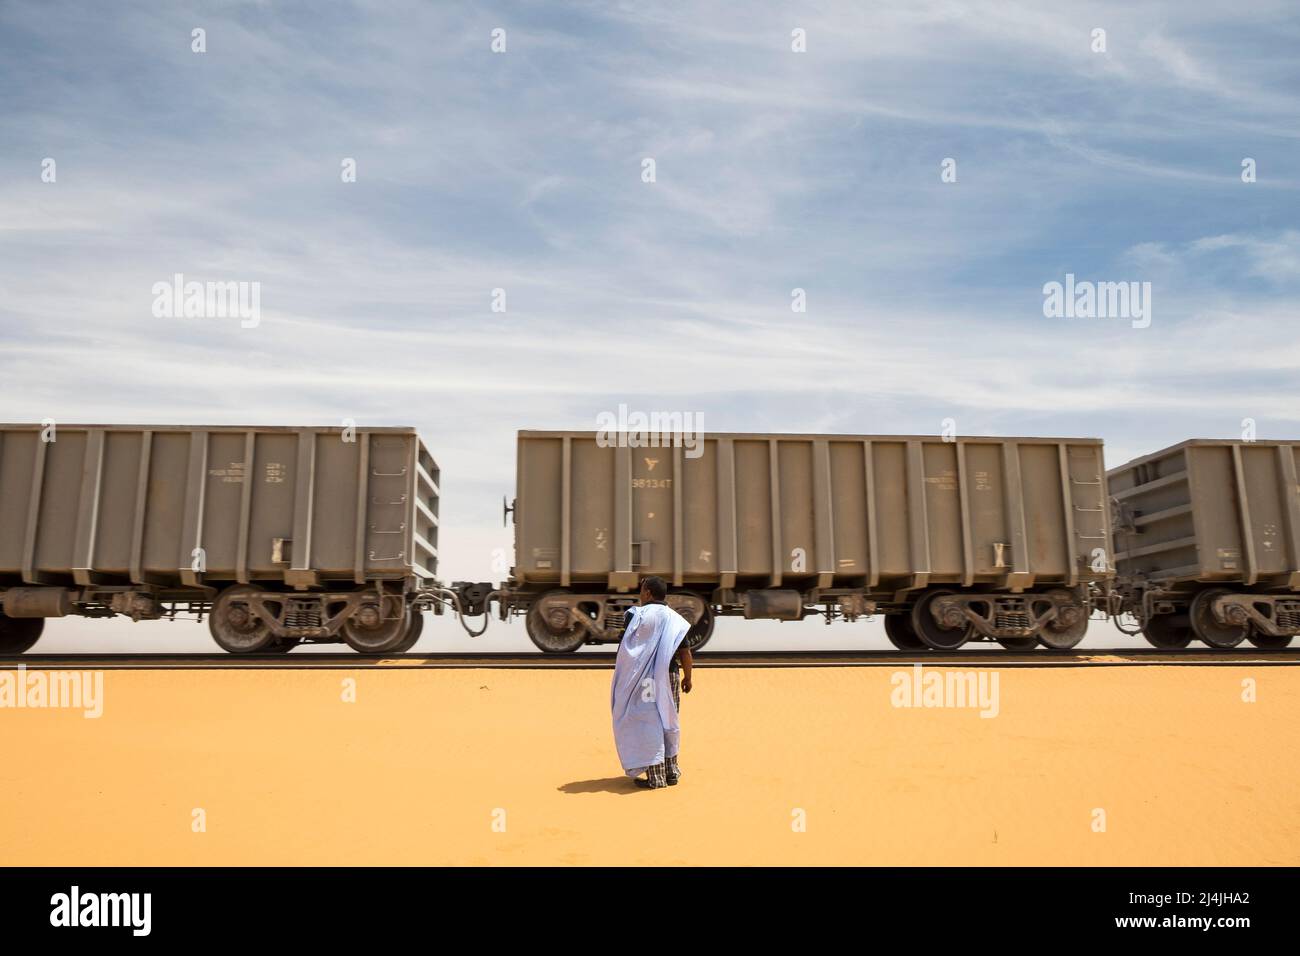 La Mauritanie, le plus long chemin de fer au monde, relie Nouadhibou à Zouerat Banque D'Images